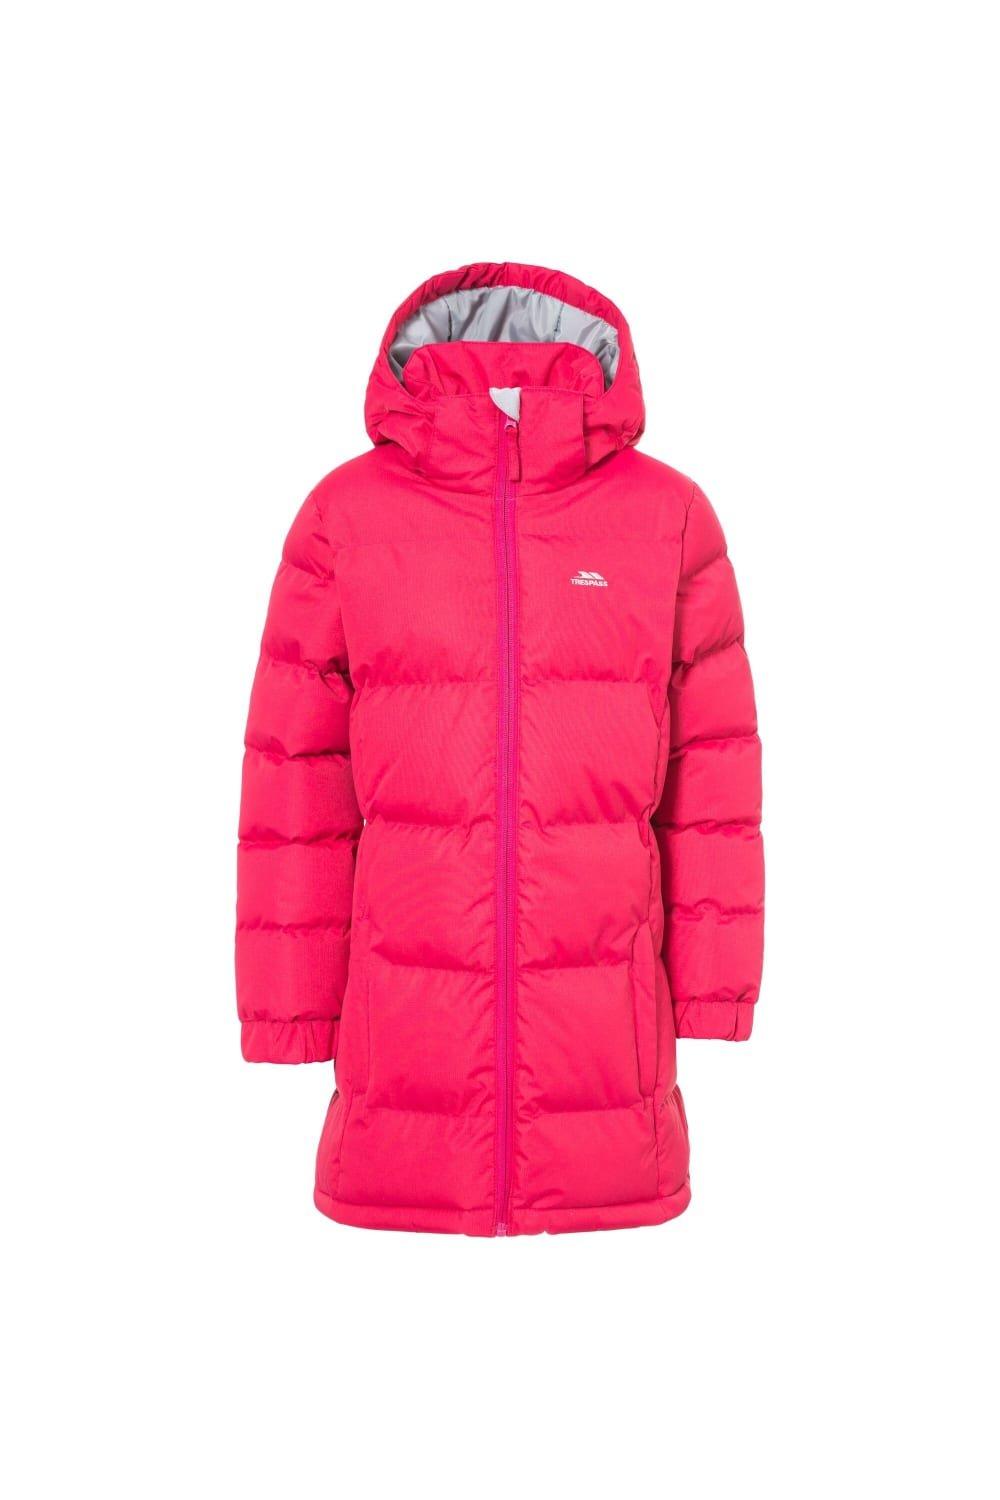 Стеганое пальто Tiffy Trespass, розовый куртка утепленная для девочек northland розовый